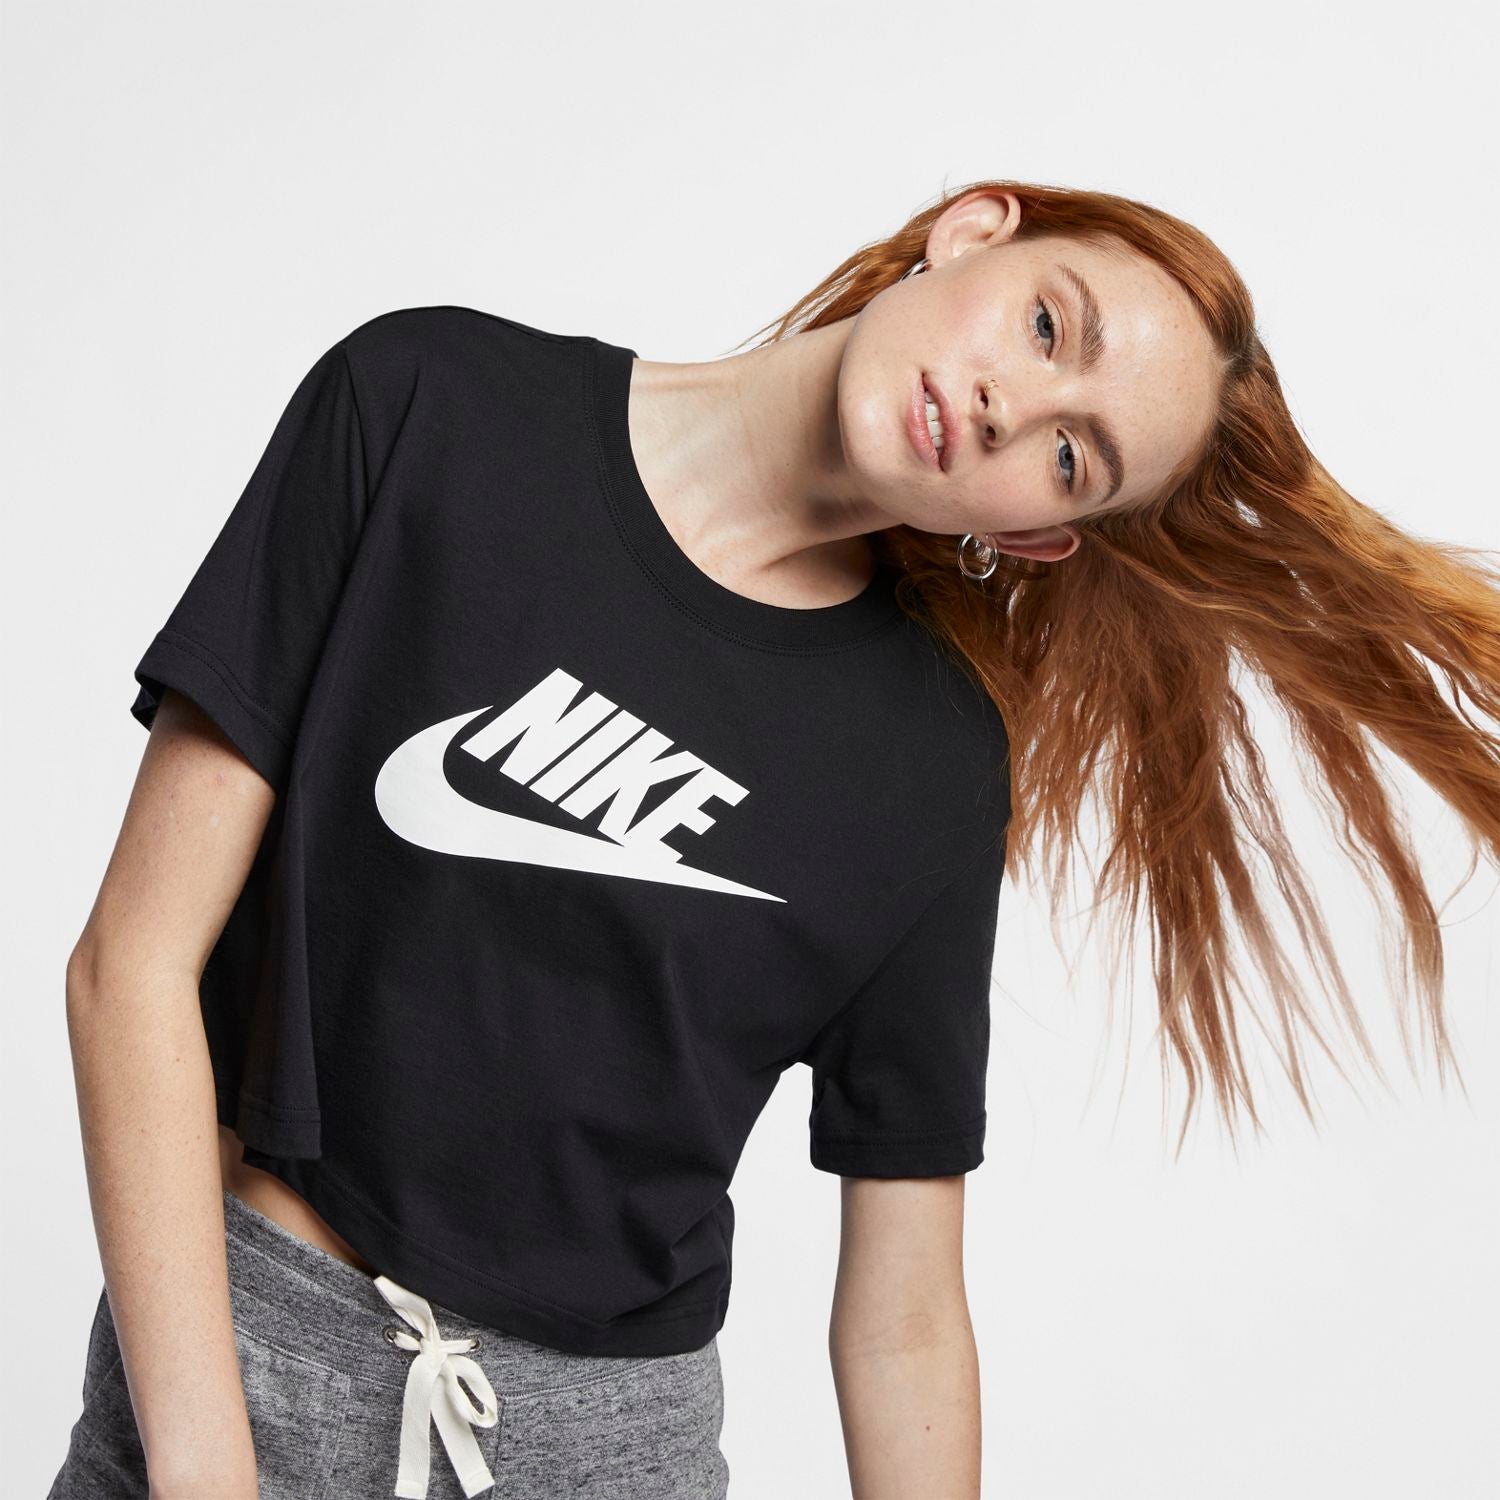 Women's Cropped Tops & T-Shirts. Nike ZA